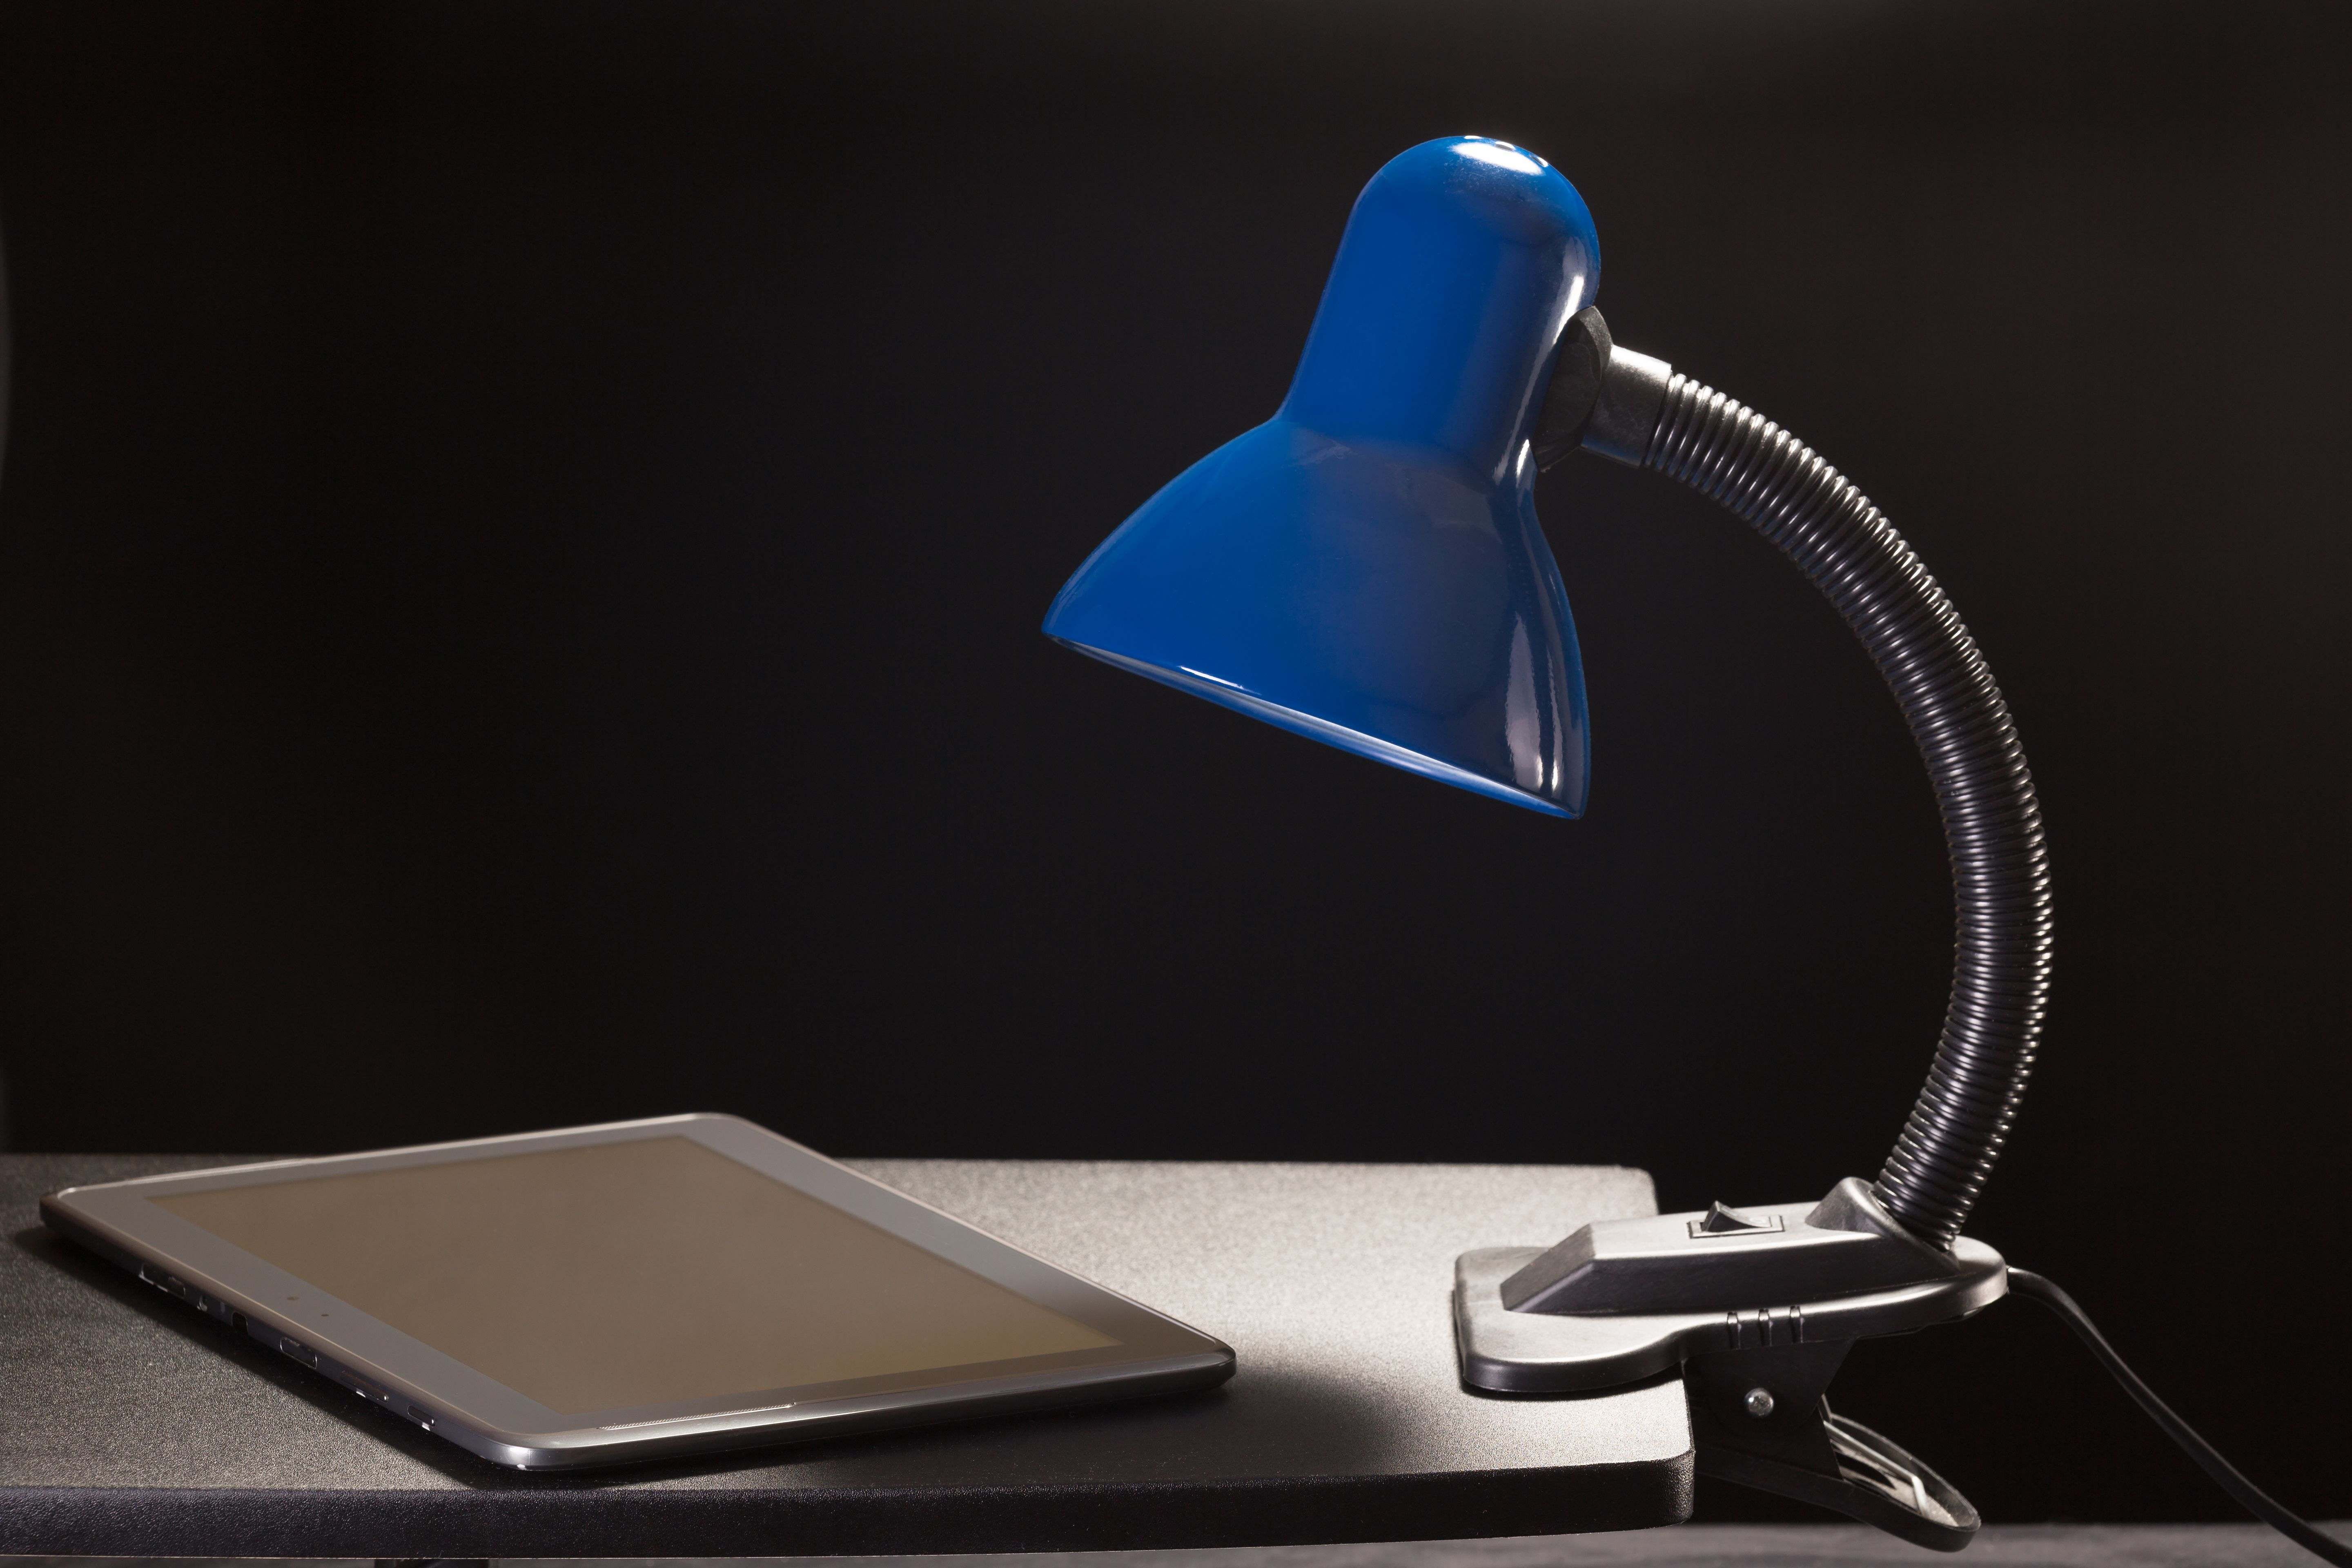 Lampe à pince :  une lampe fonctionnelle pour le bureau, le chevet et le lit